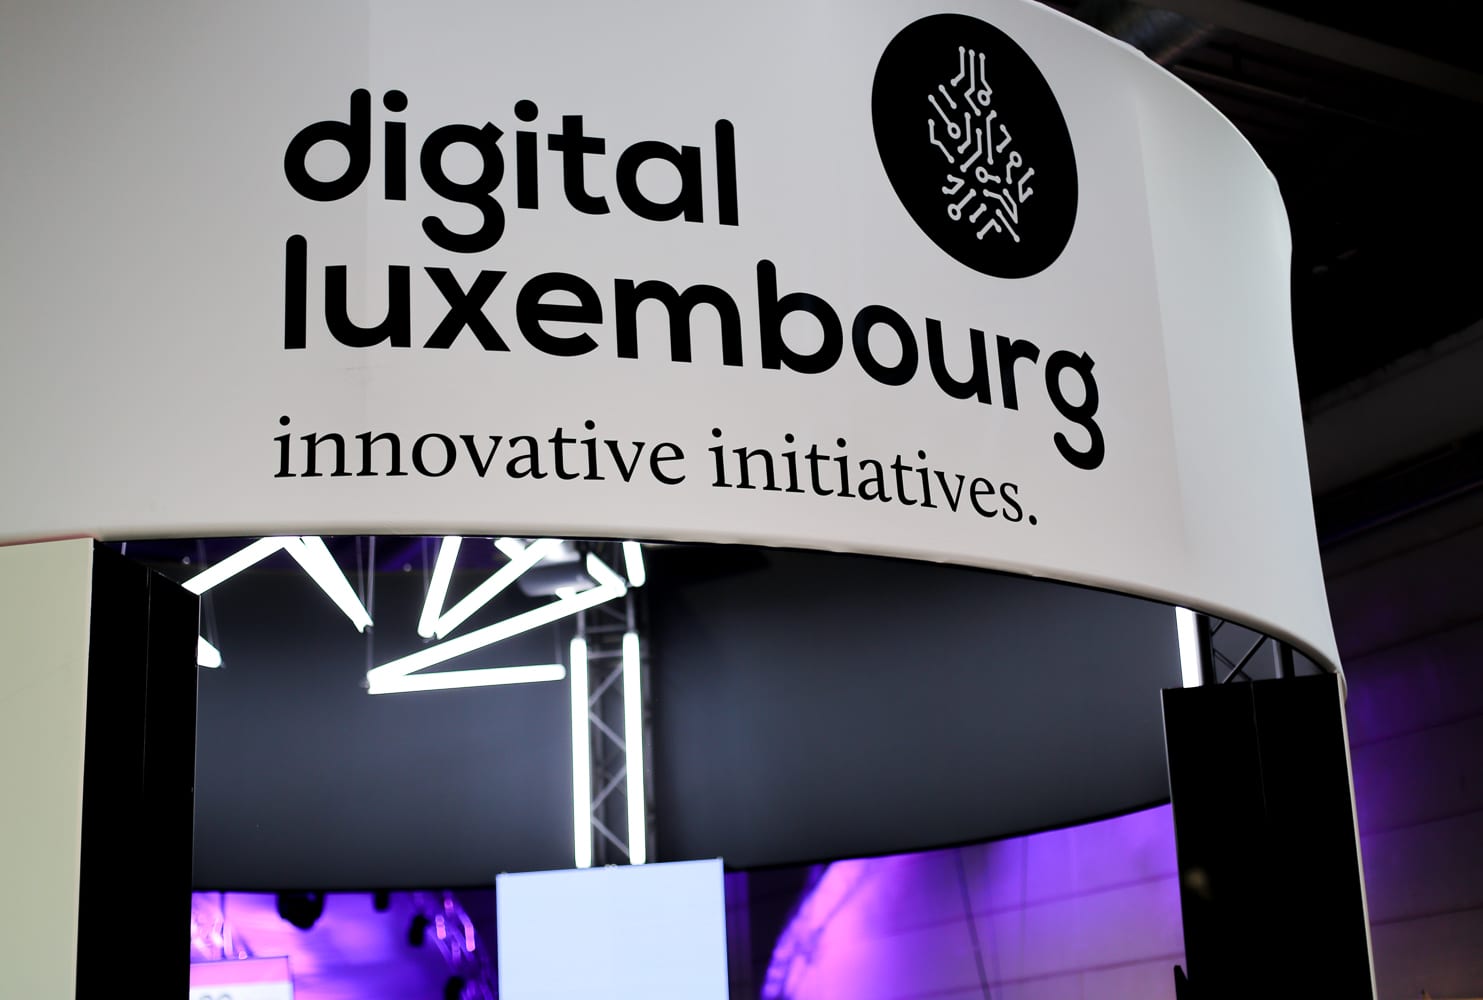 Shine a light agence évènementielle luxembourg - créateur d'expériences immersives - Conception de stand Digital Luxembourg